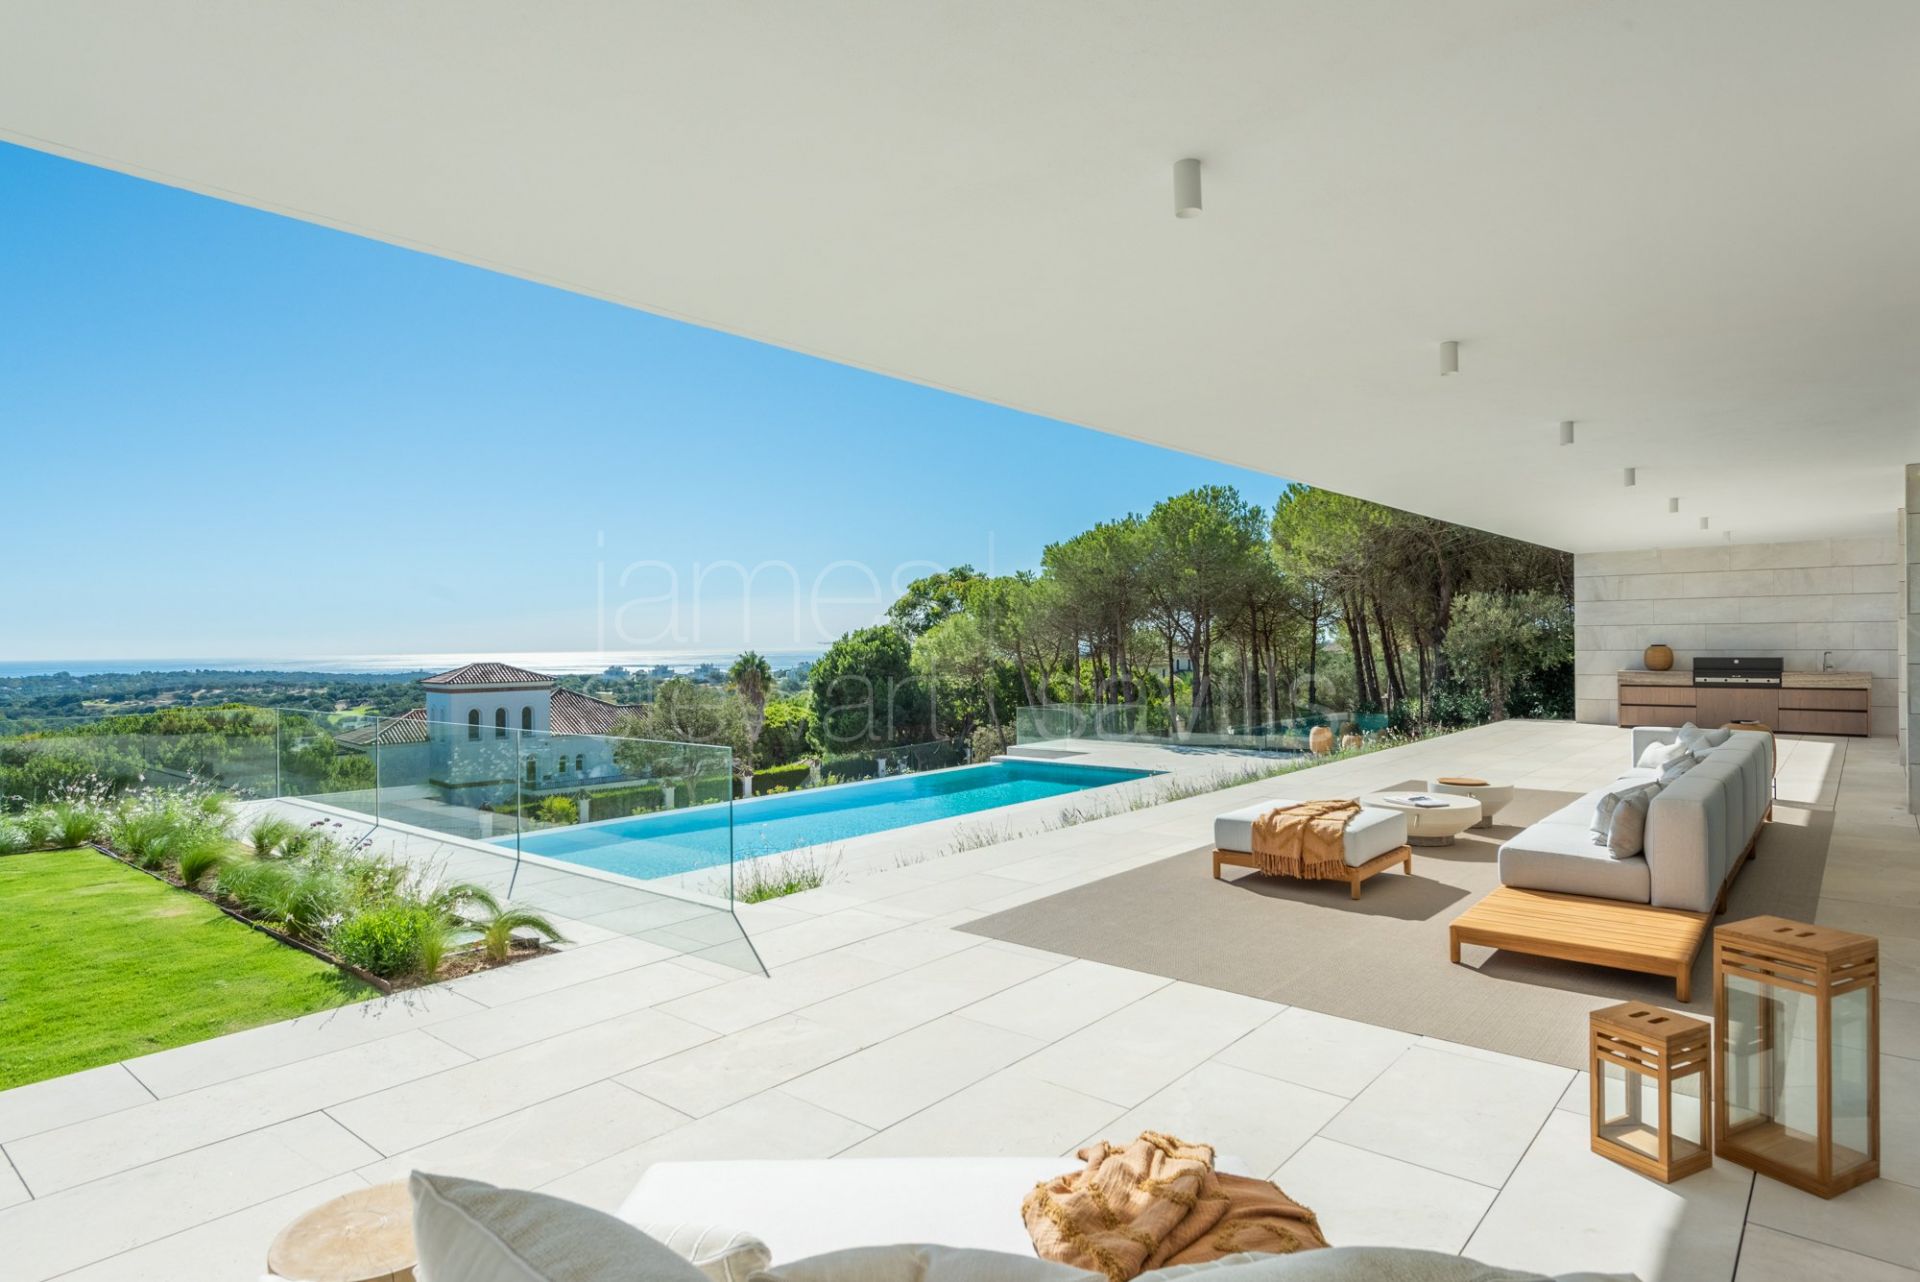 LAS ALAMANDAS - Superb Villa in the Almenara area of Sotogrande Alto with beautiful golf and sea views